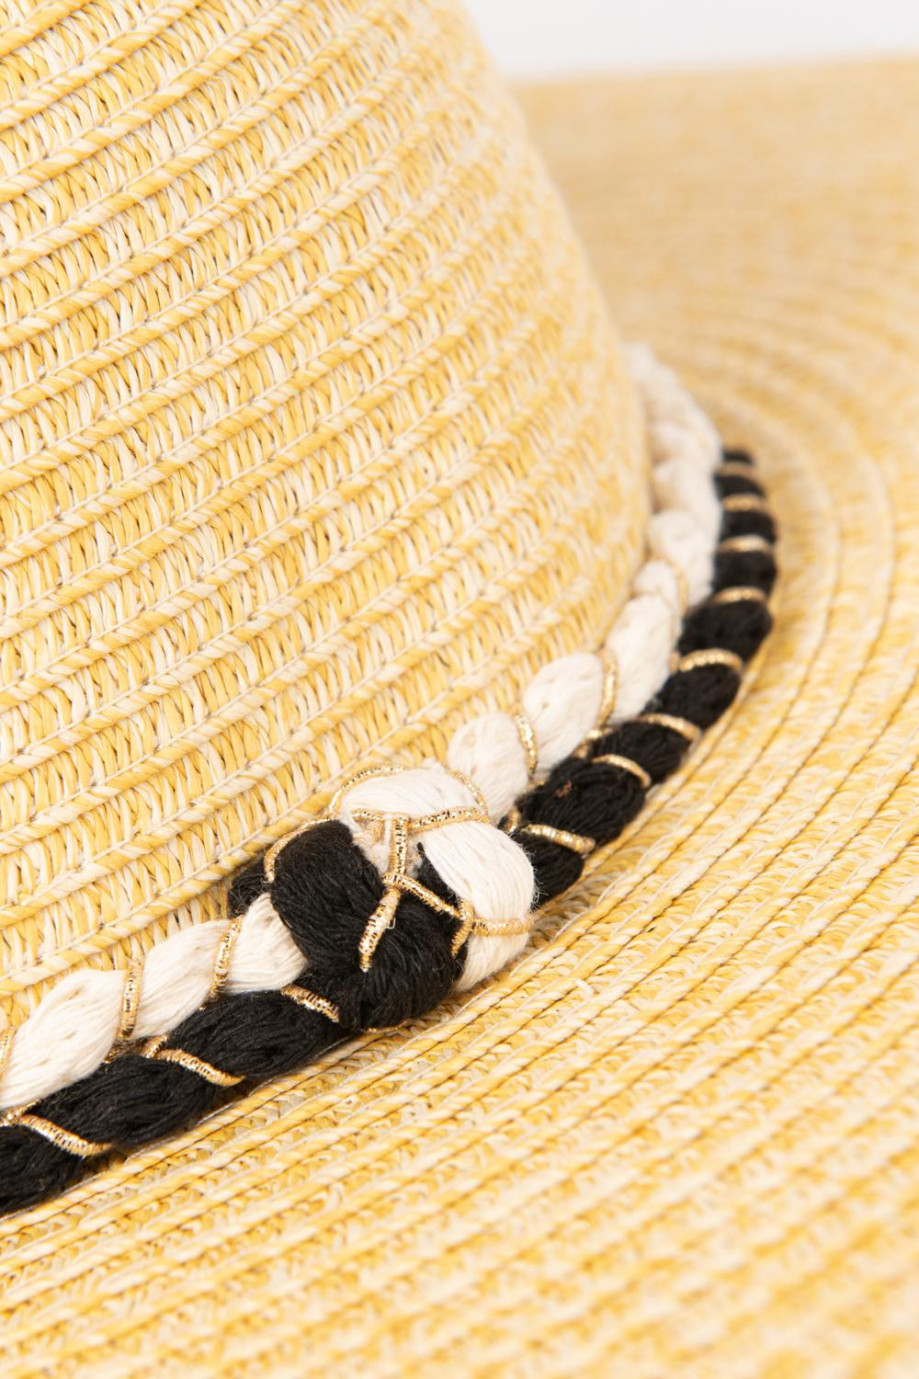 Sombrero tejido crema claro con lazo decorativo colorido